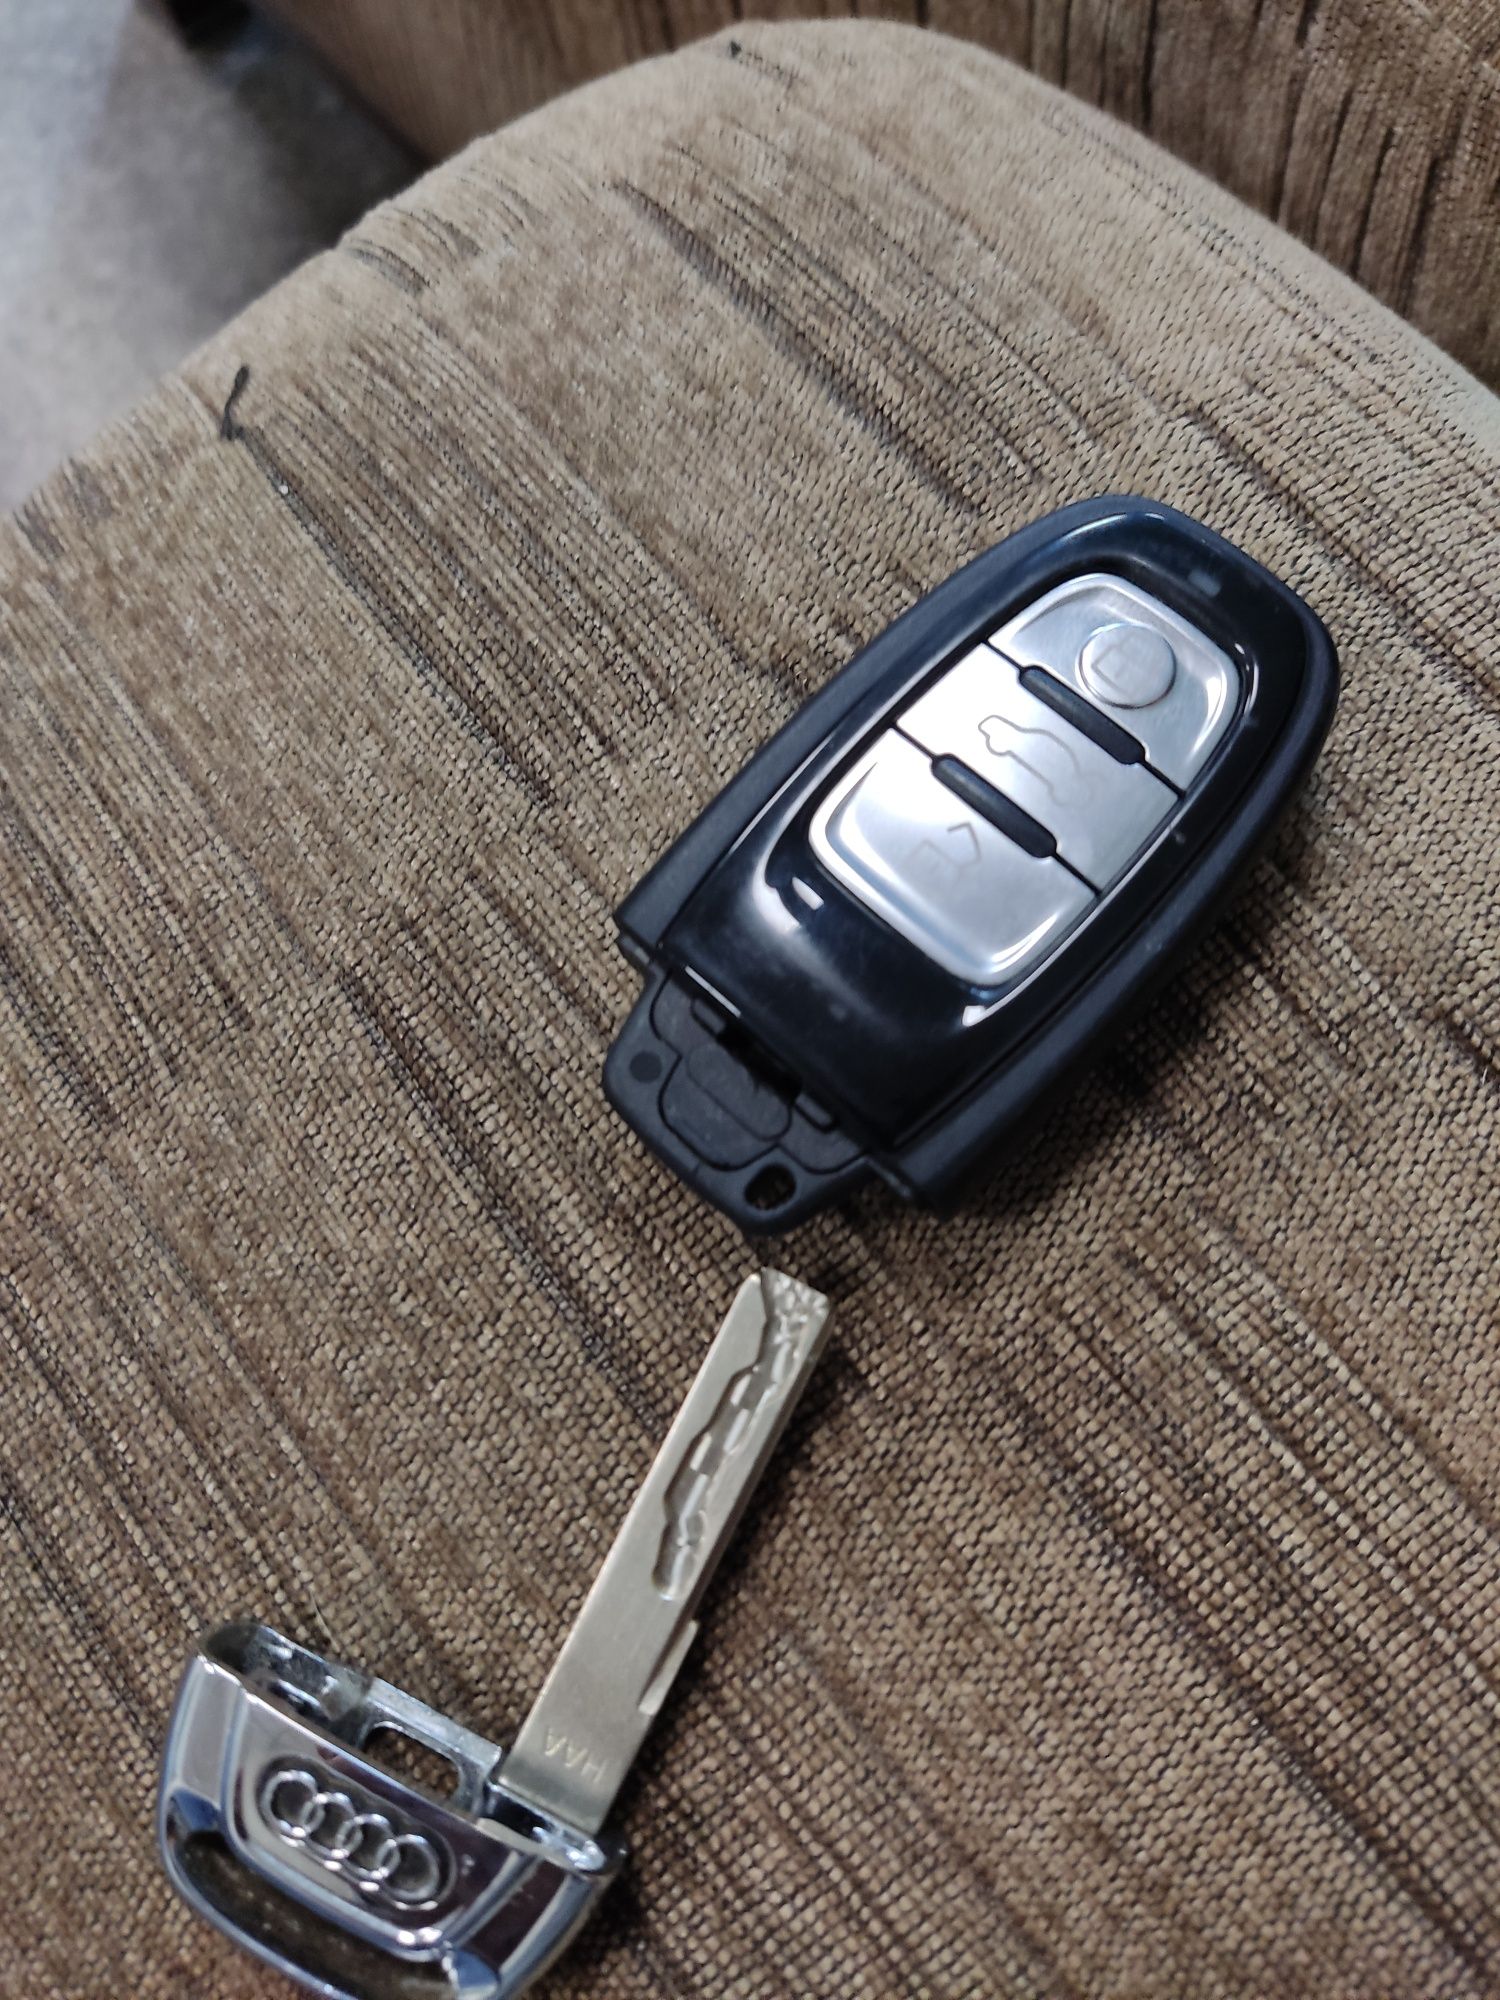 Ключ от  Audi a7